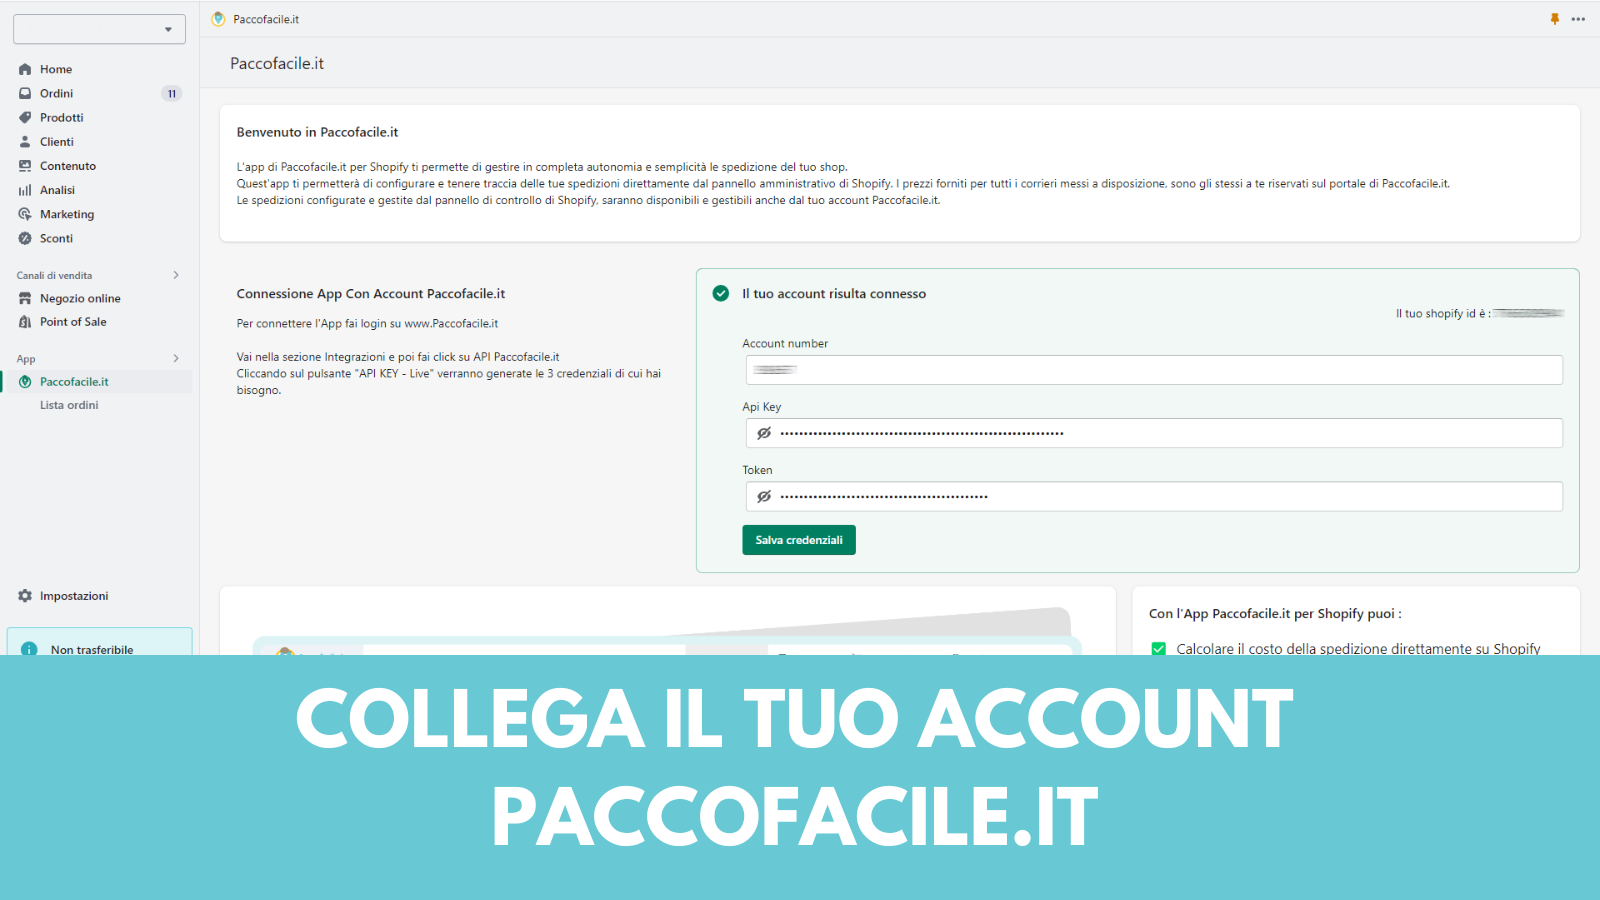 Collega il tuo account Paccofacile.it